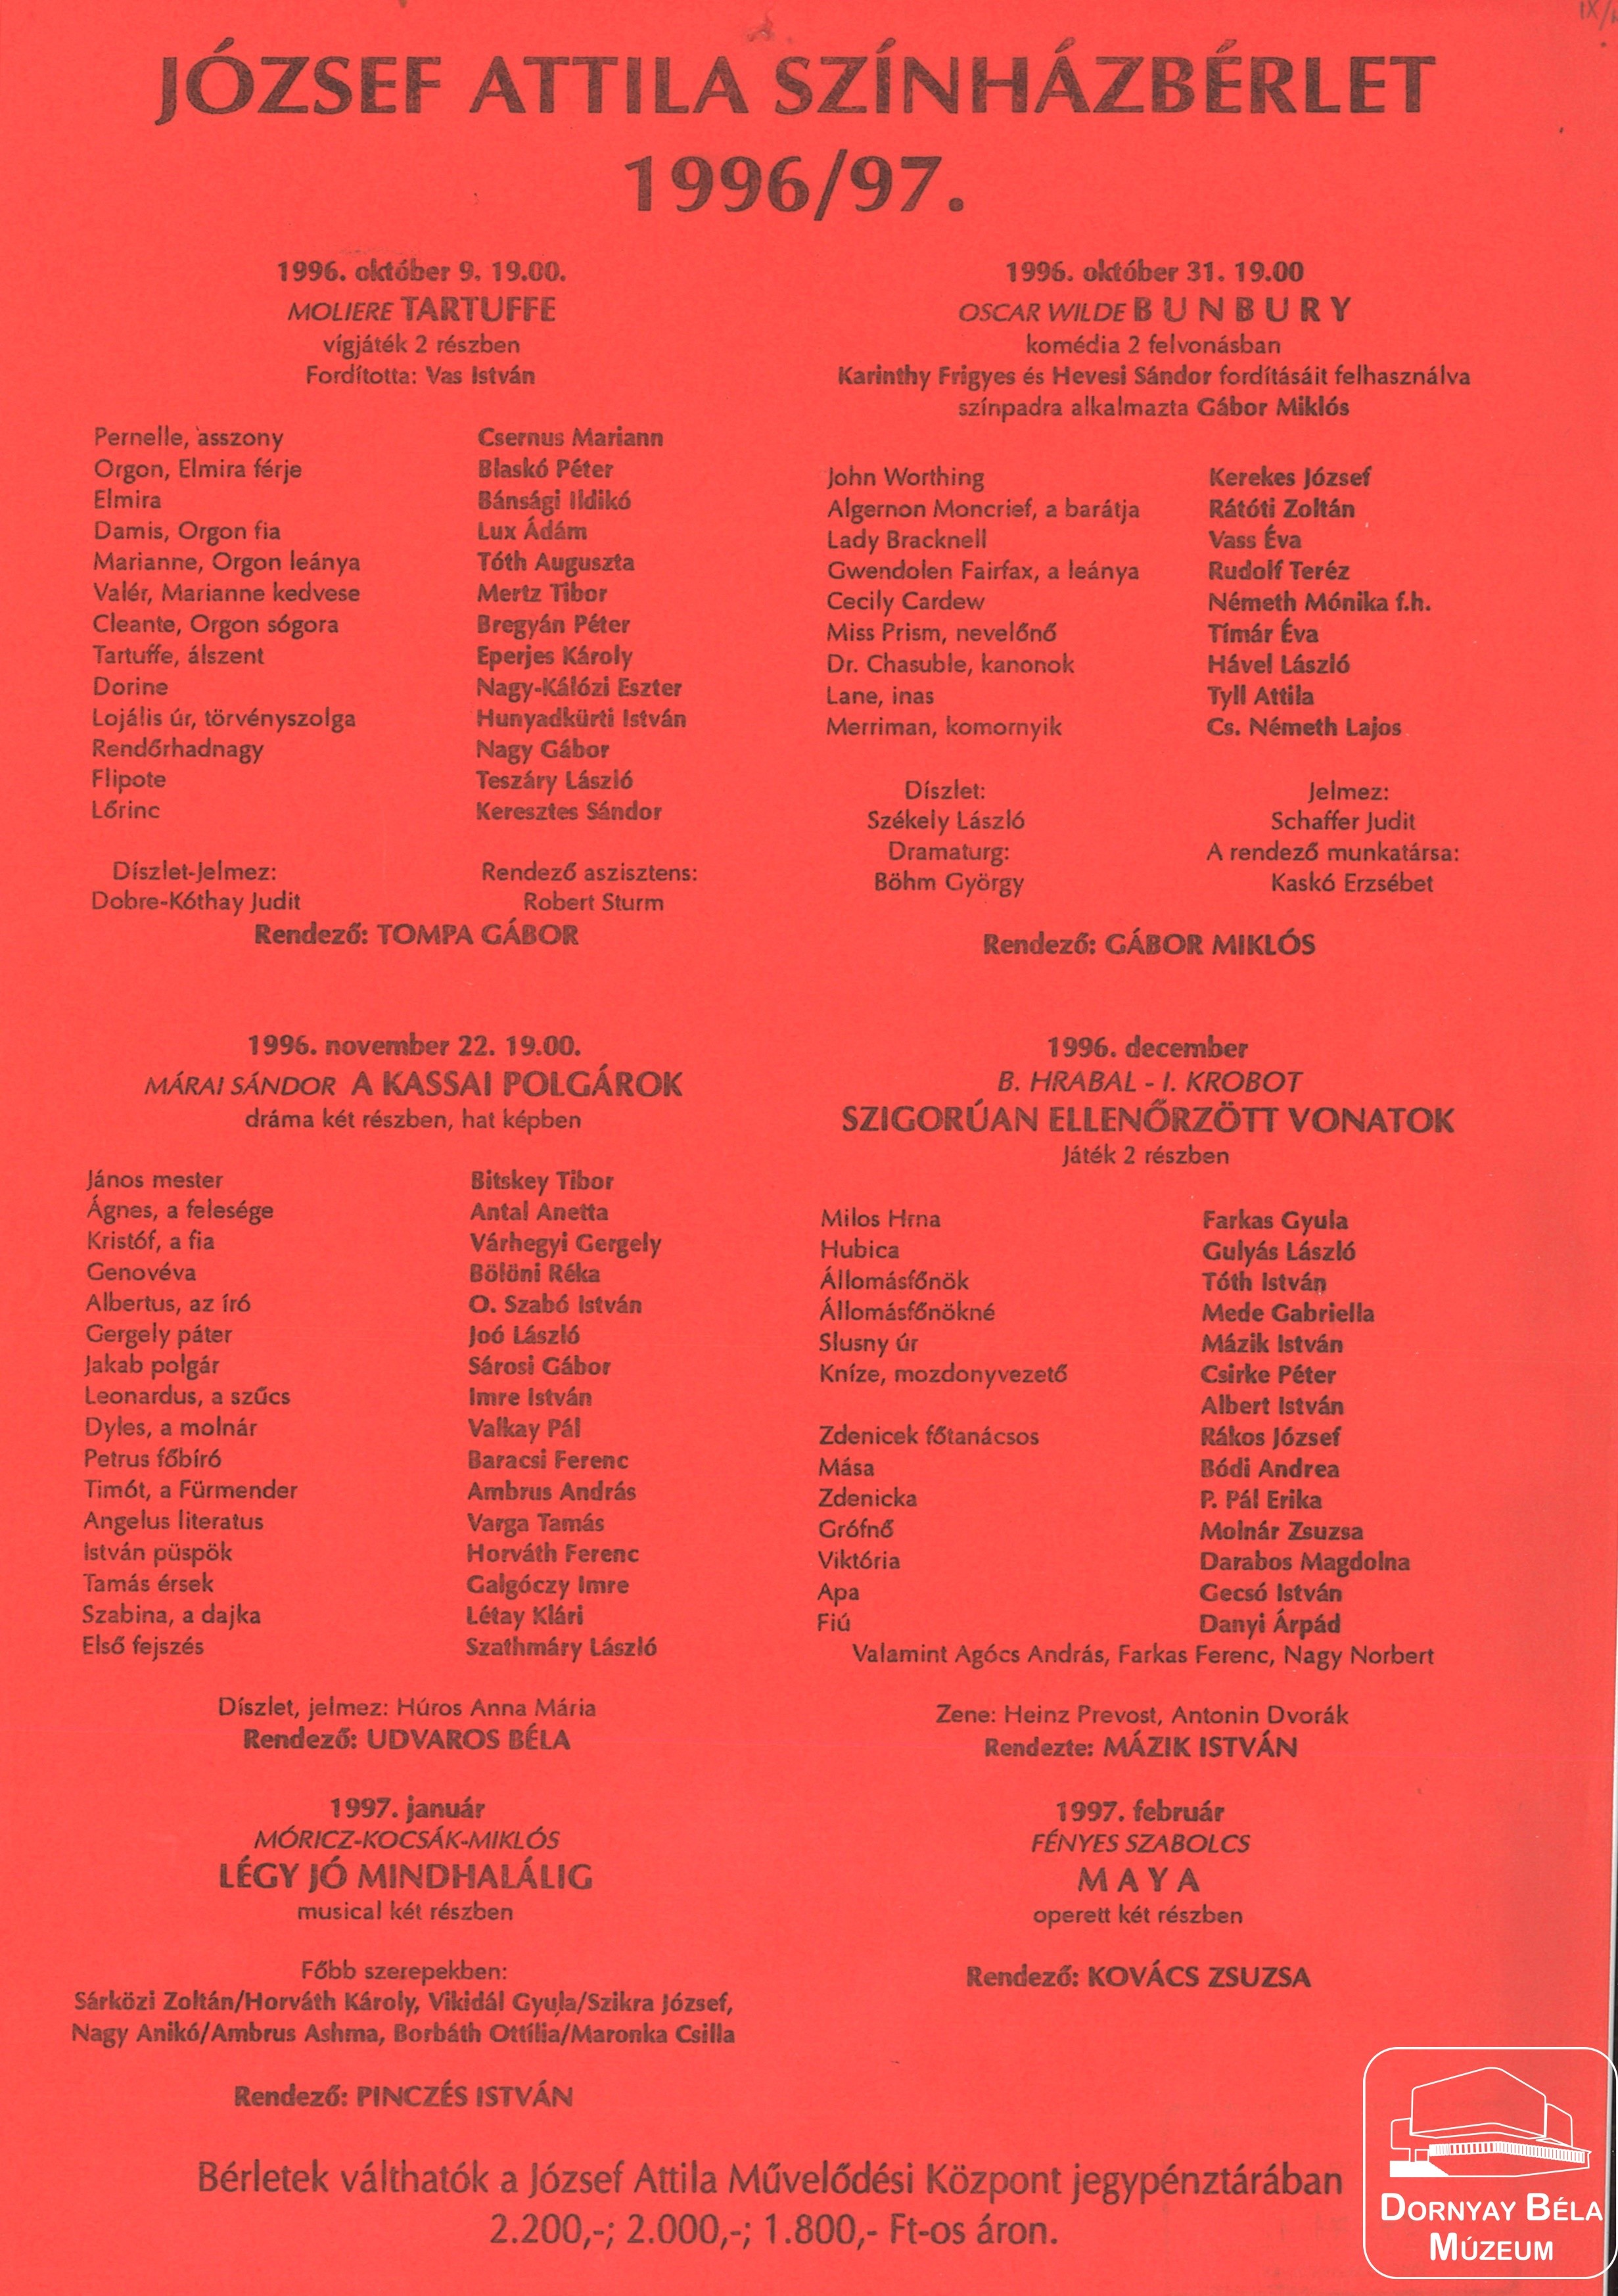 József Attila színházbérlet programja az 1996-97 évadra (Dornyay Béla Múzeum, Salgótarján CC BY-NC-SA)